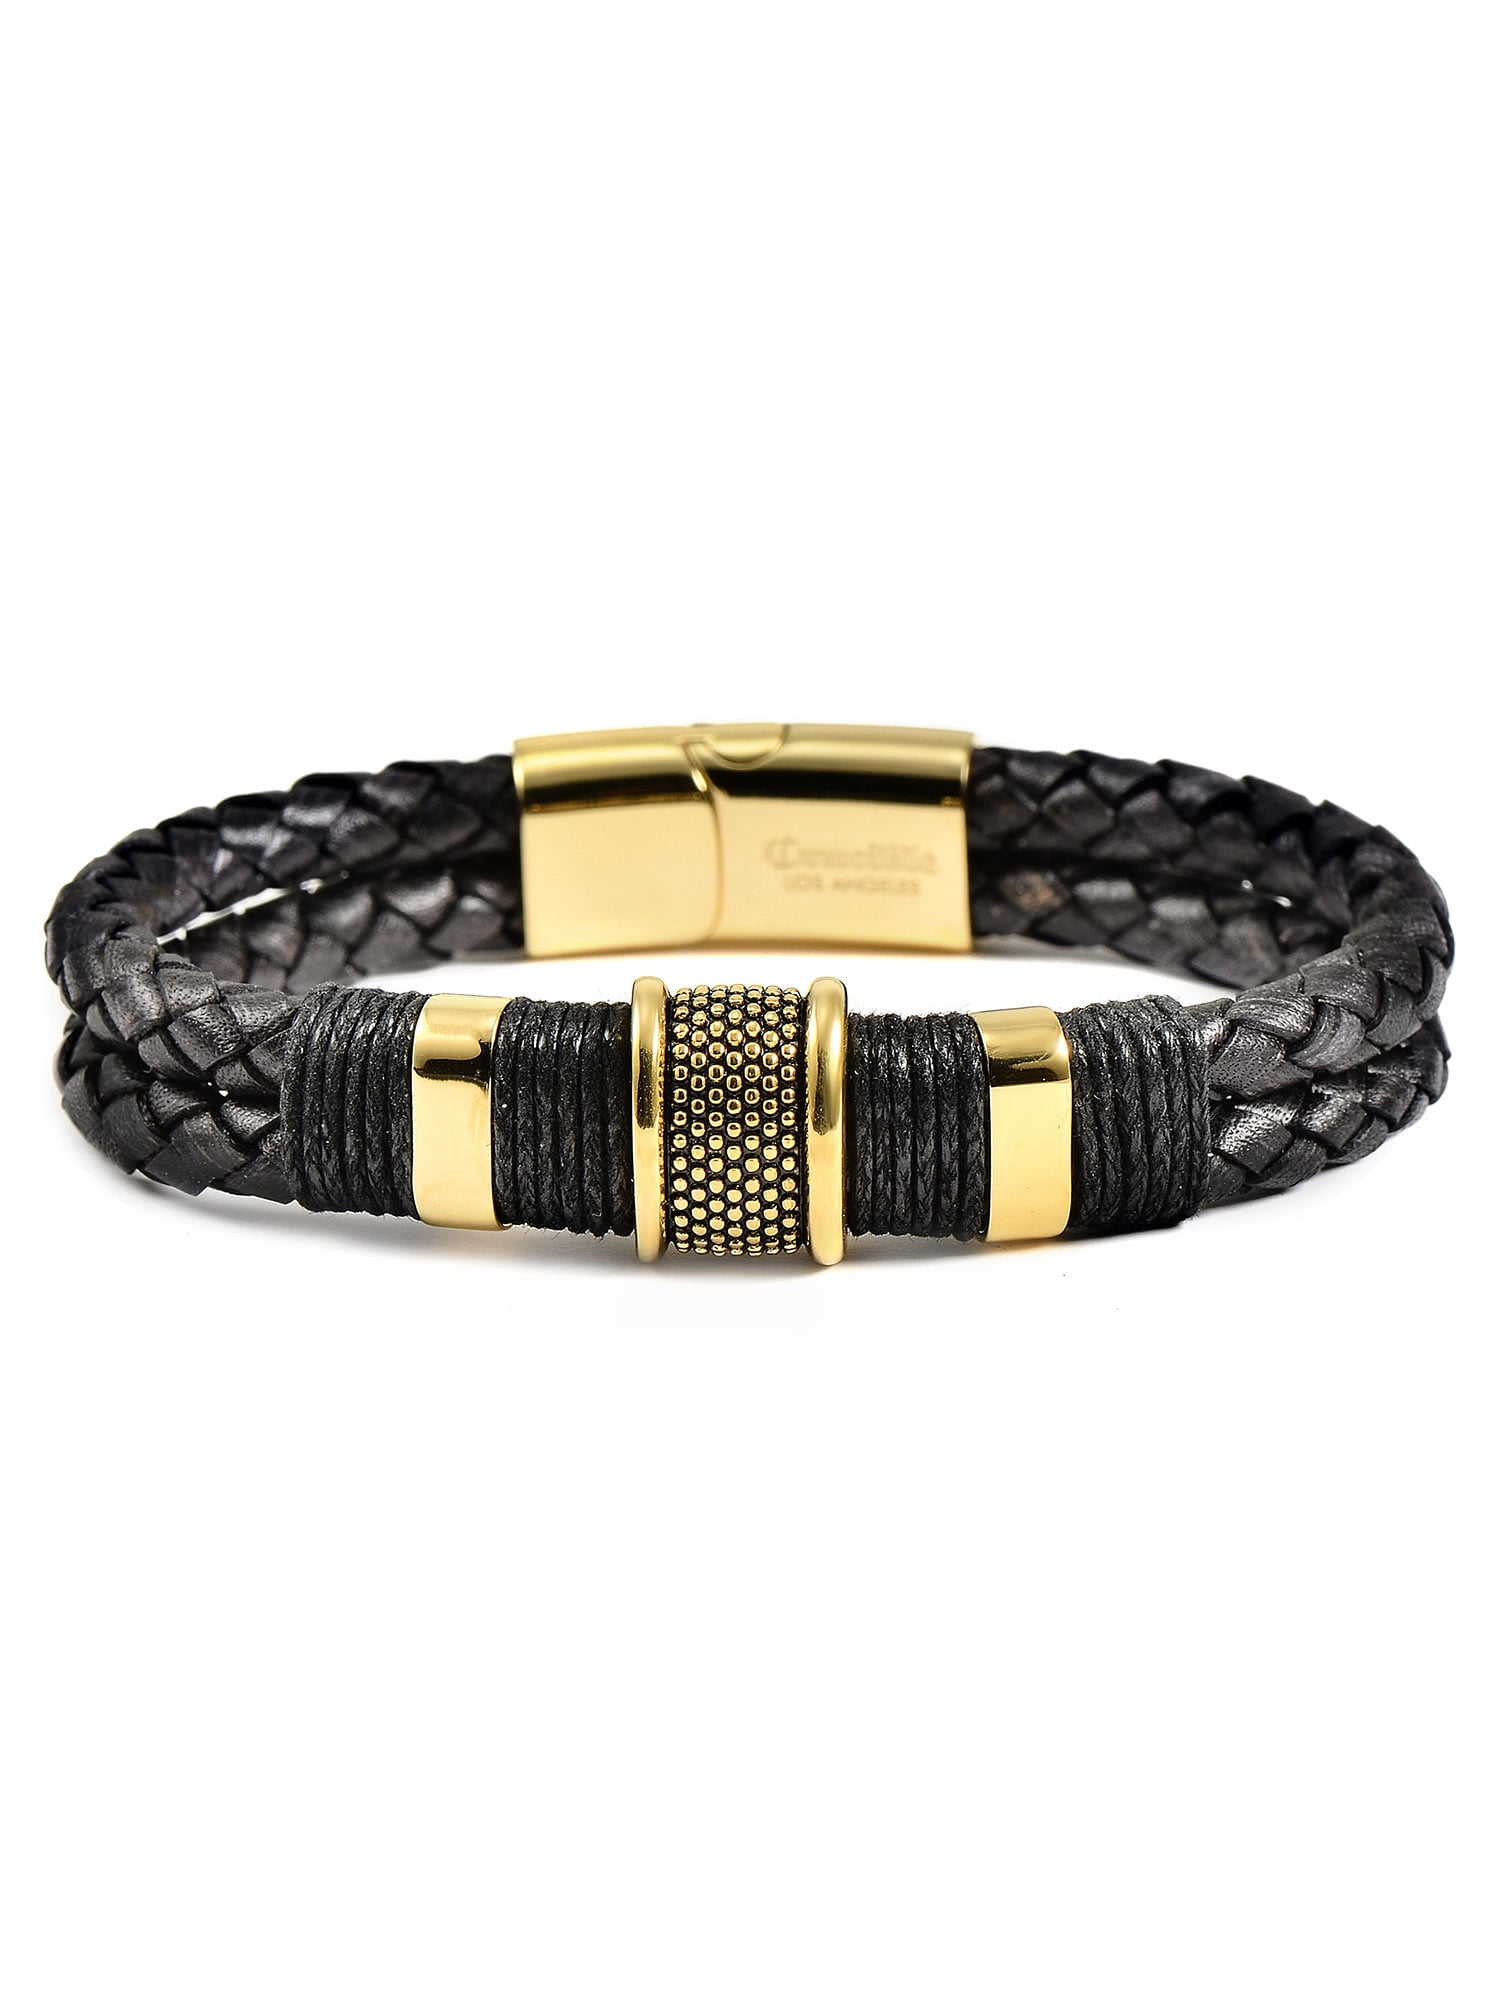 Men's 18kt Gold-Plated Square-Link Bracelet with Black Rubber. 8.5